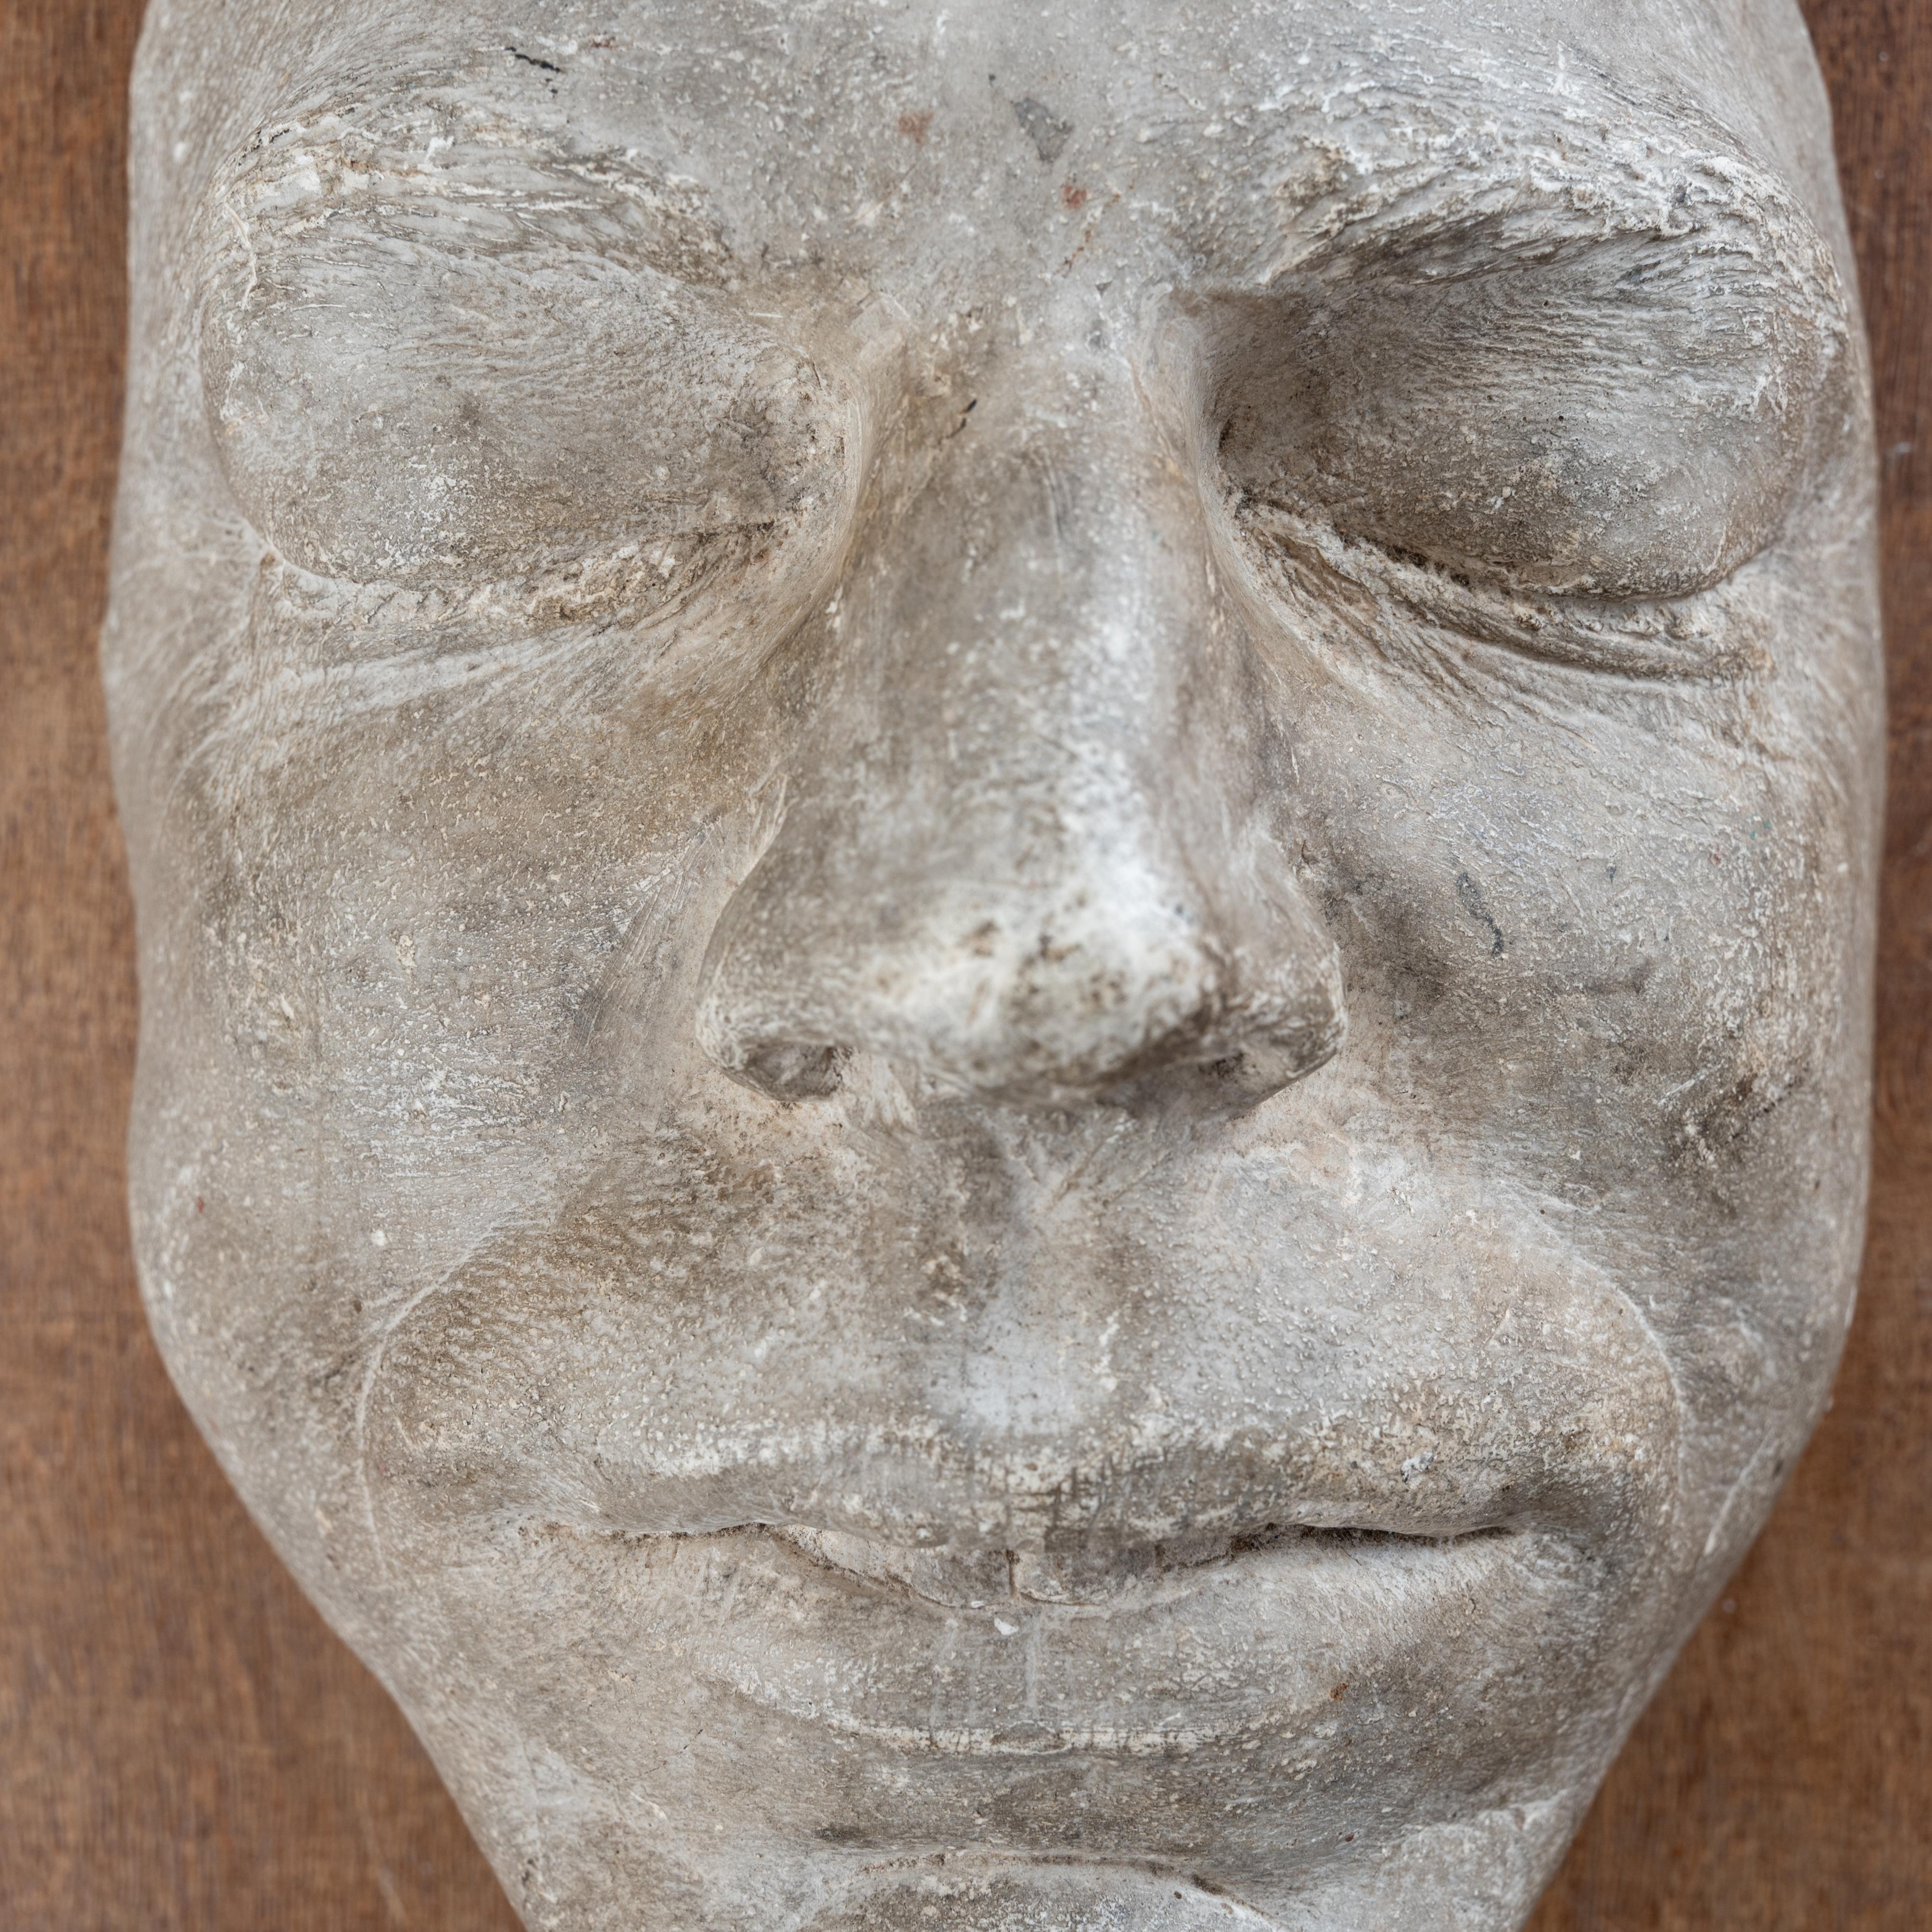 Plaster Death Mask For Sale